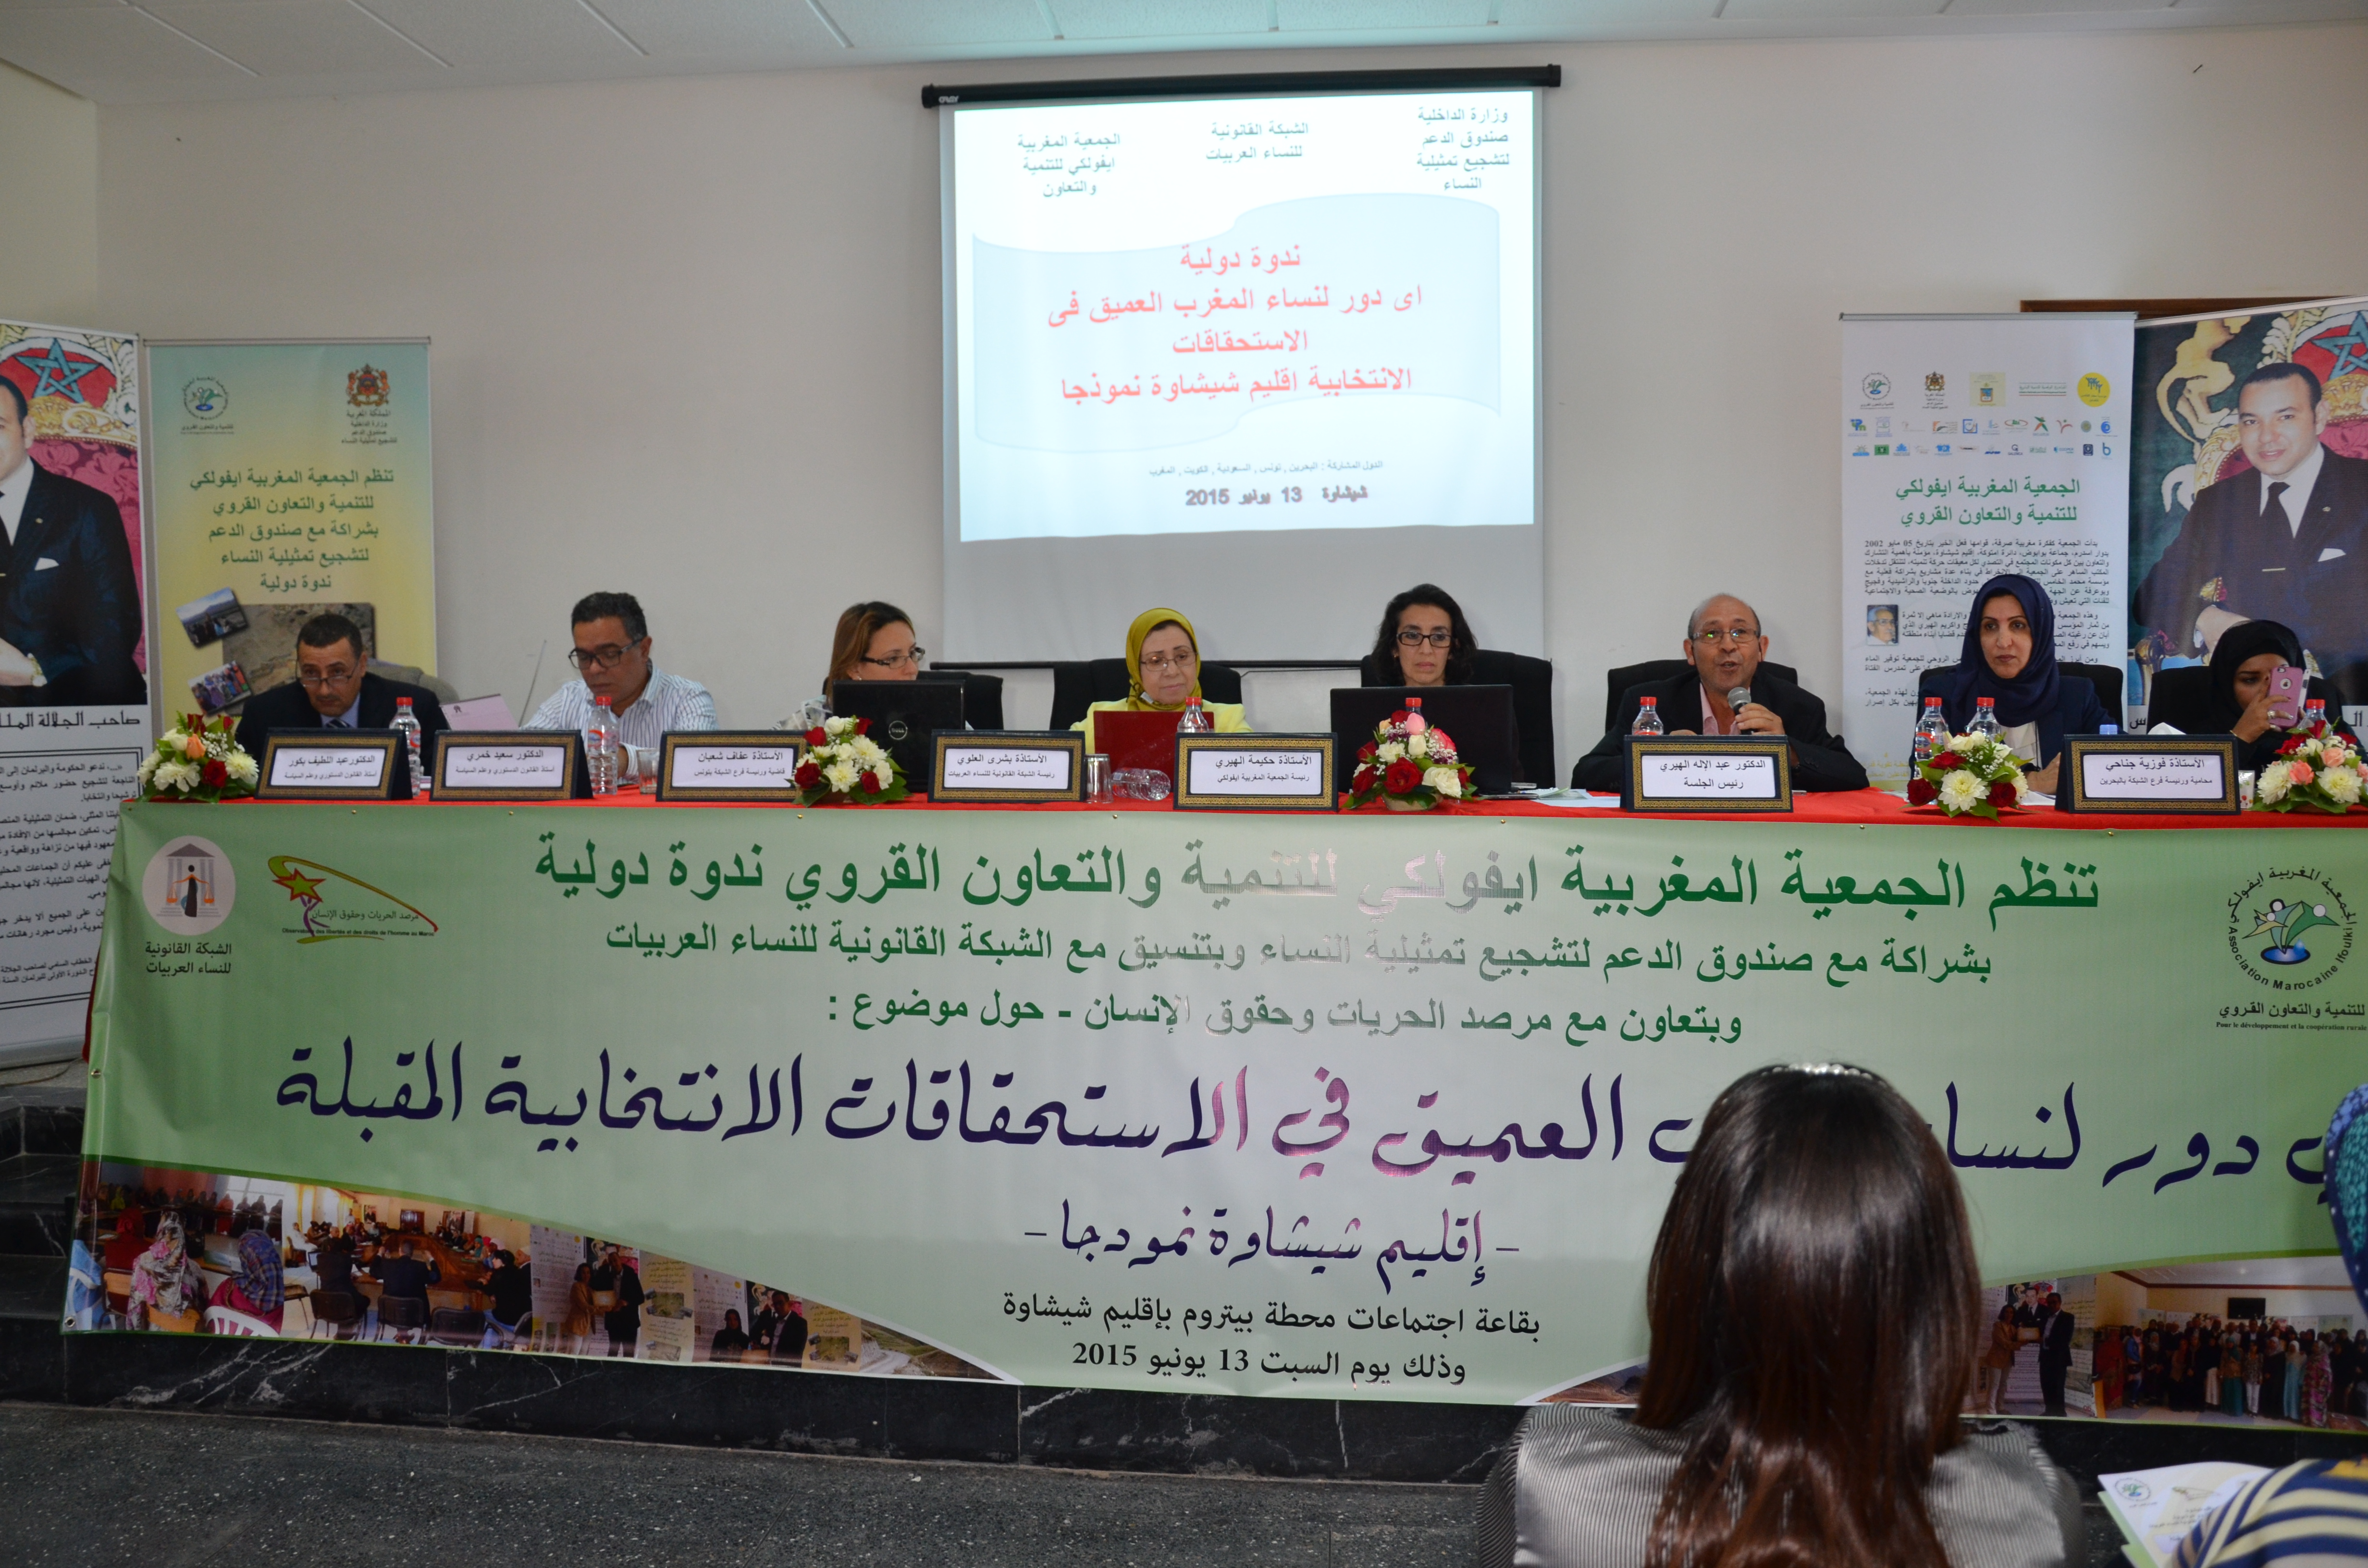 التقرير التركيبي للندوة الدولية المنعقدة تحت عنوان: أي دور لنساء المغرب العميق في الإستحقاقات الإنتخابية المقبلة - إقليم شيشاوة نموذجا